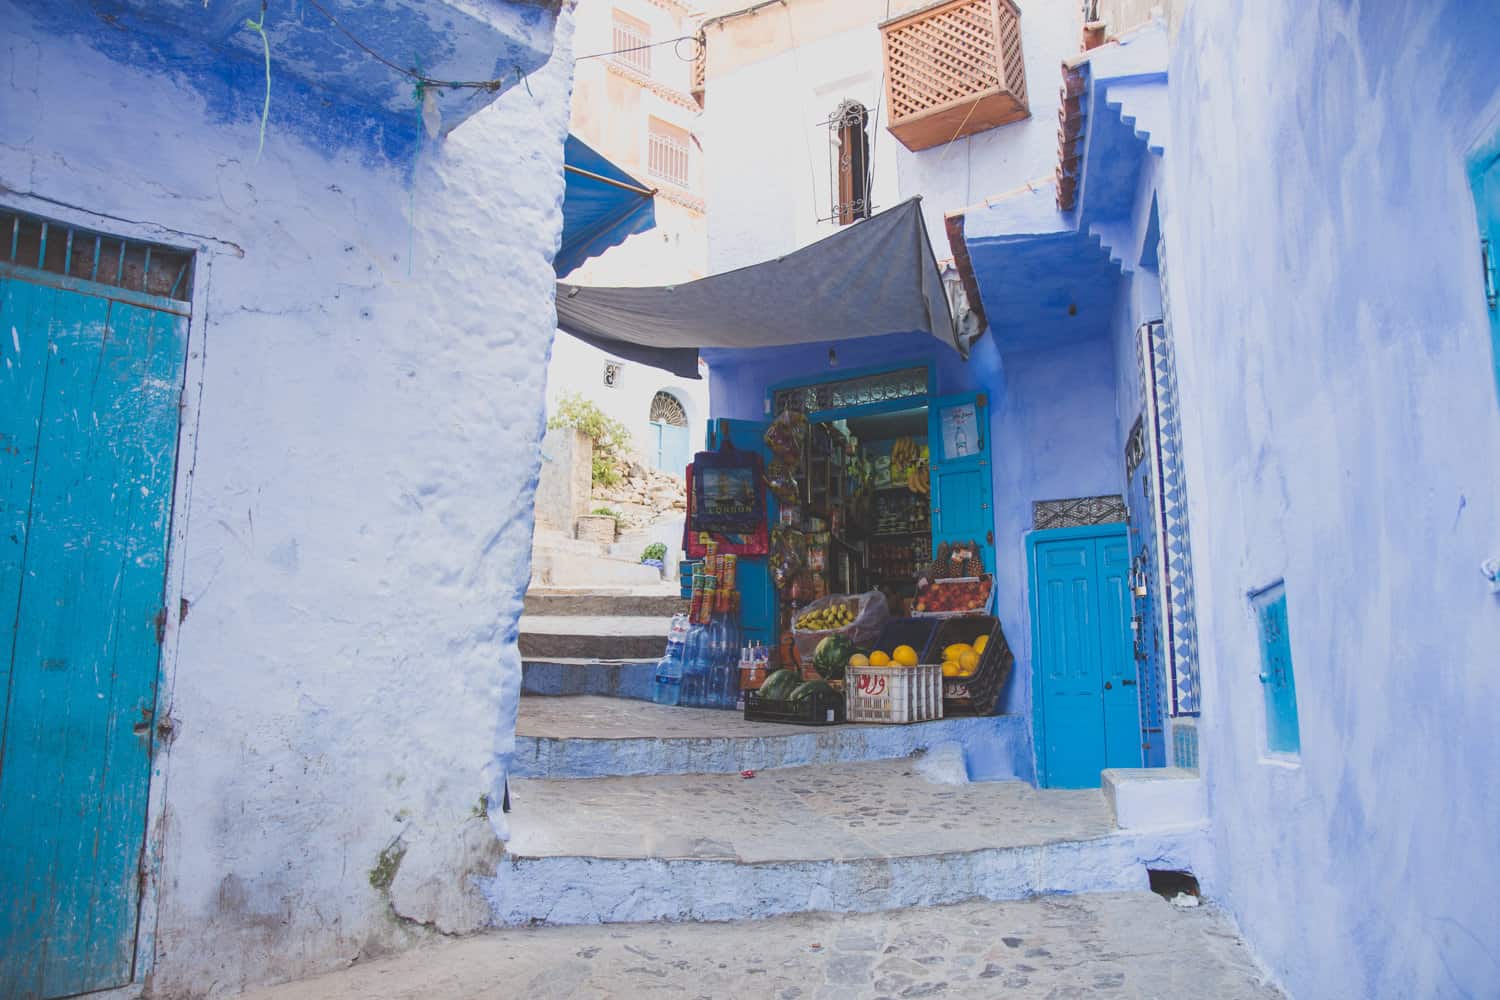 blaues Gebäude mit einem kleinen Markt mit frischem Obst